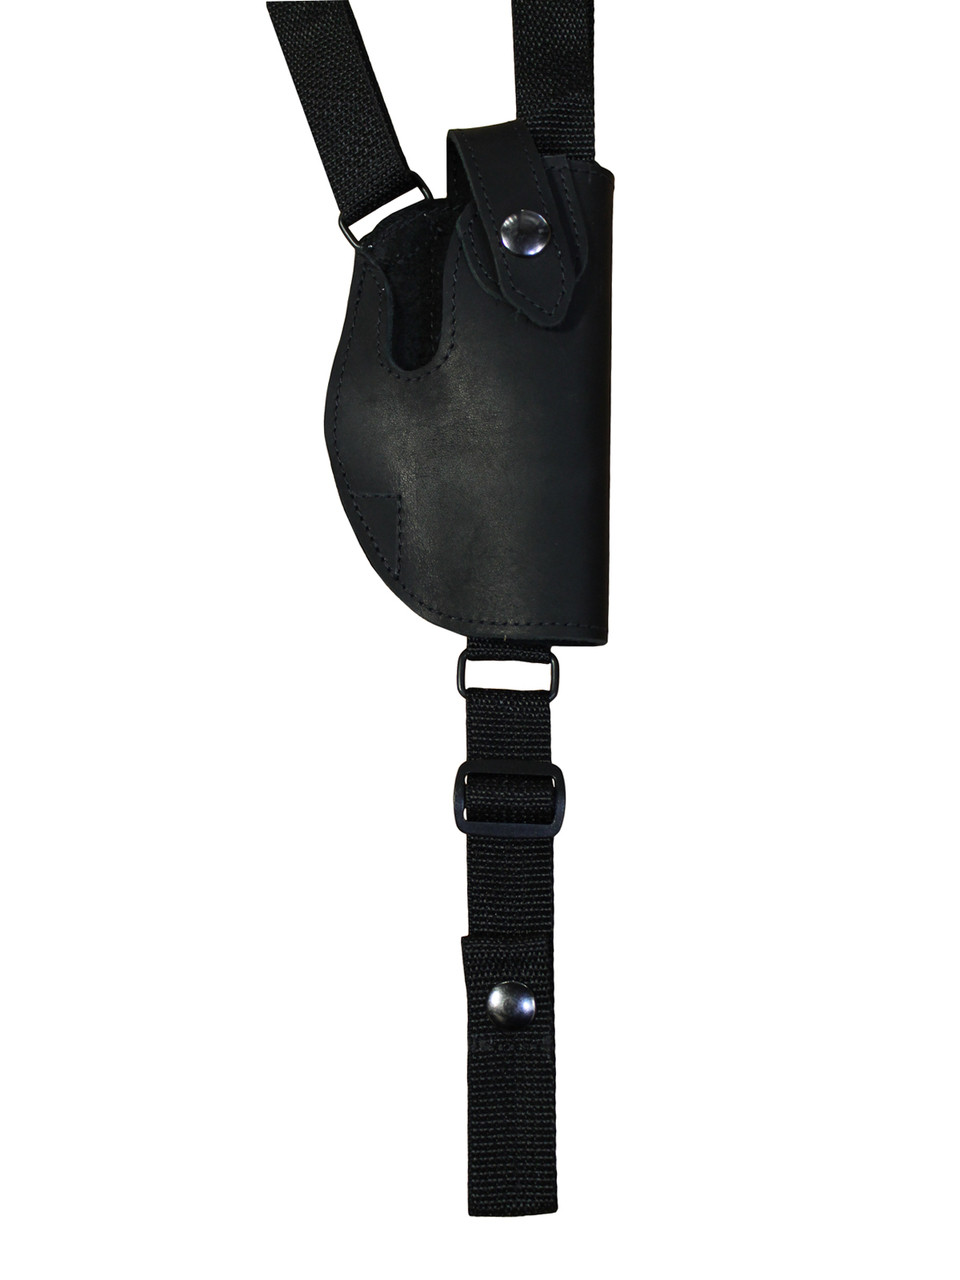 holster for shoulder pad